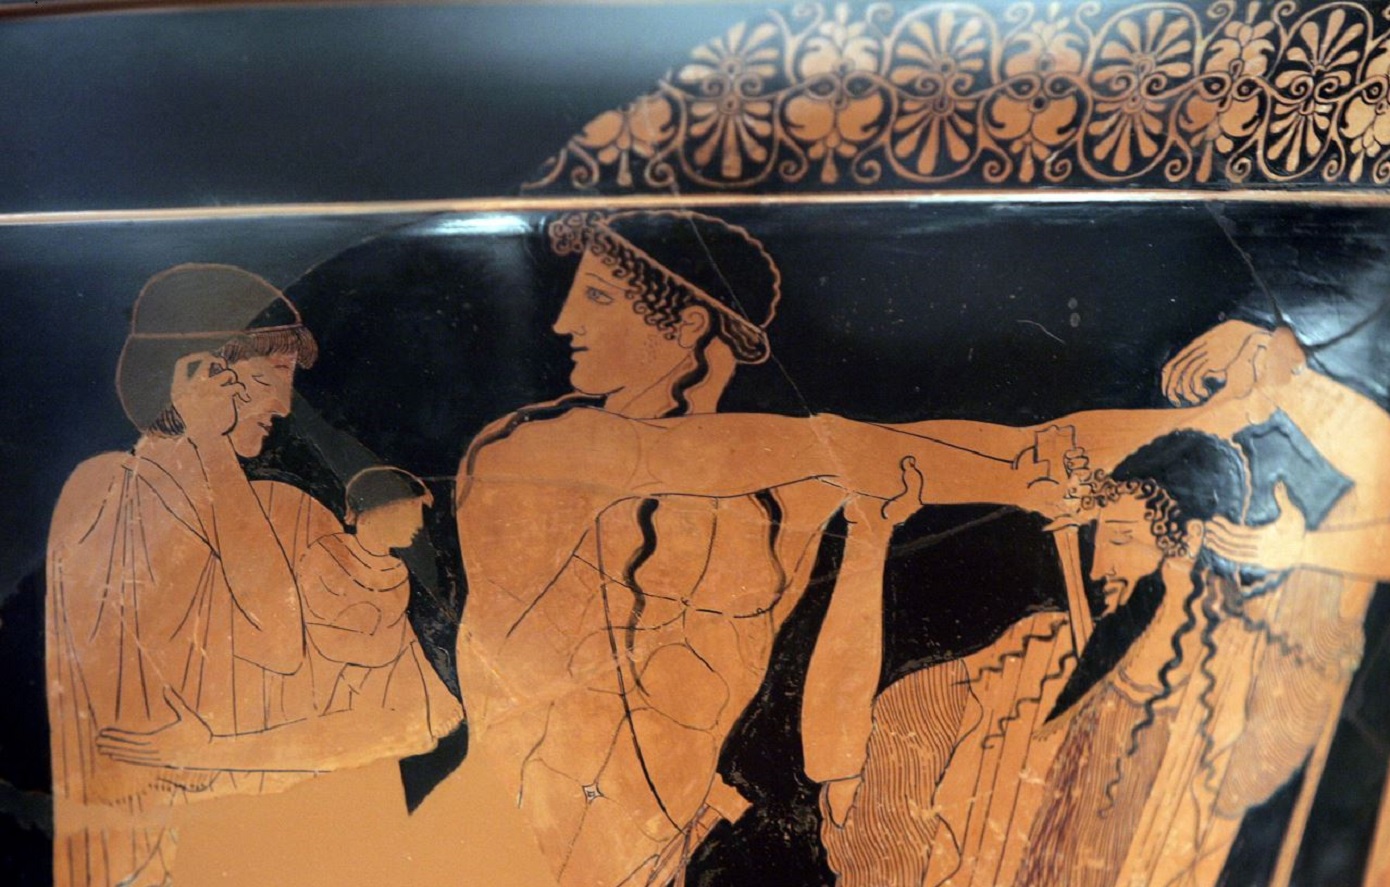 Οι τέσσερις αγώνες στην αρχαία Ελλάδα που έπρεπε να κερδίσει ένας Ολυμπιονίκης για να γίνει θρύλος